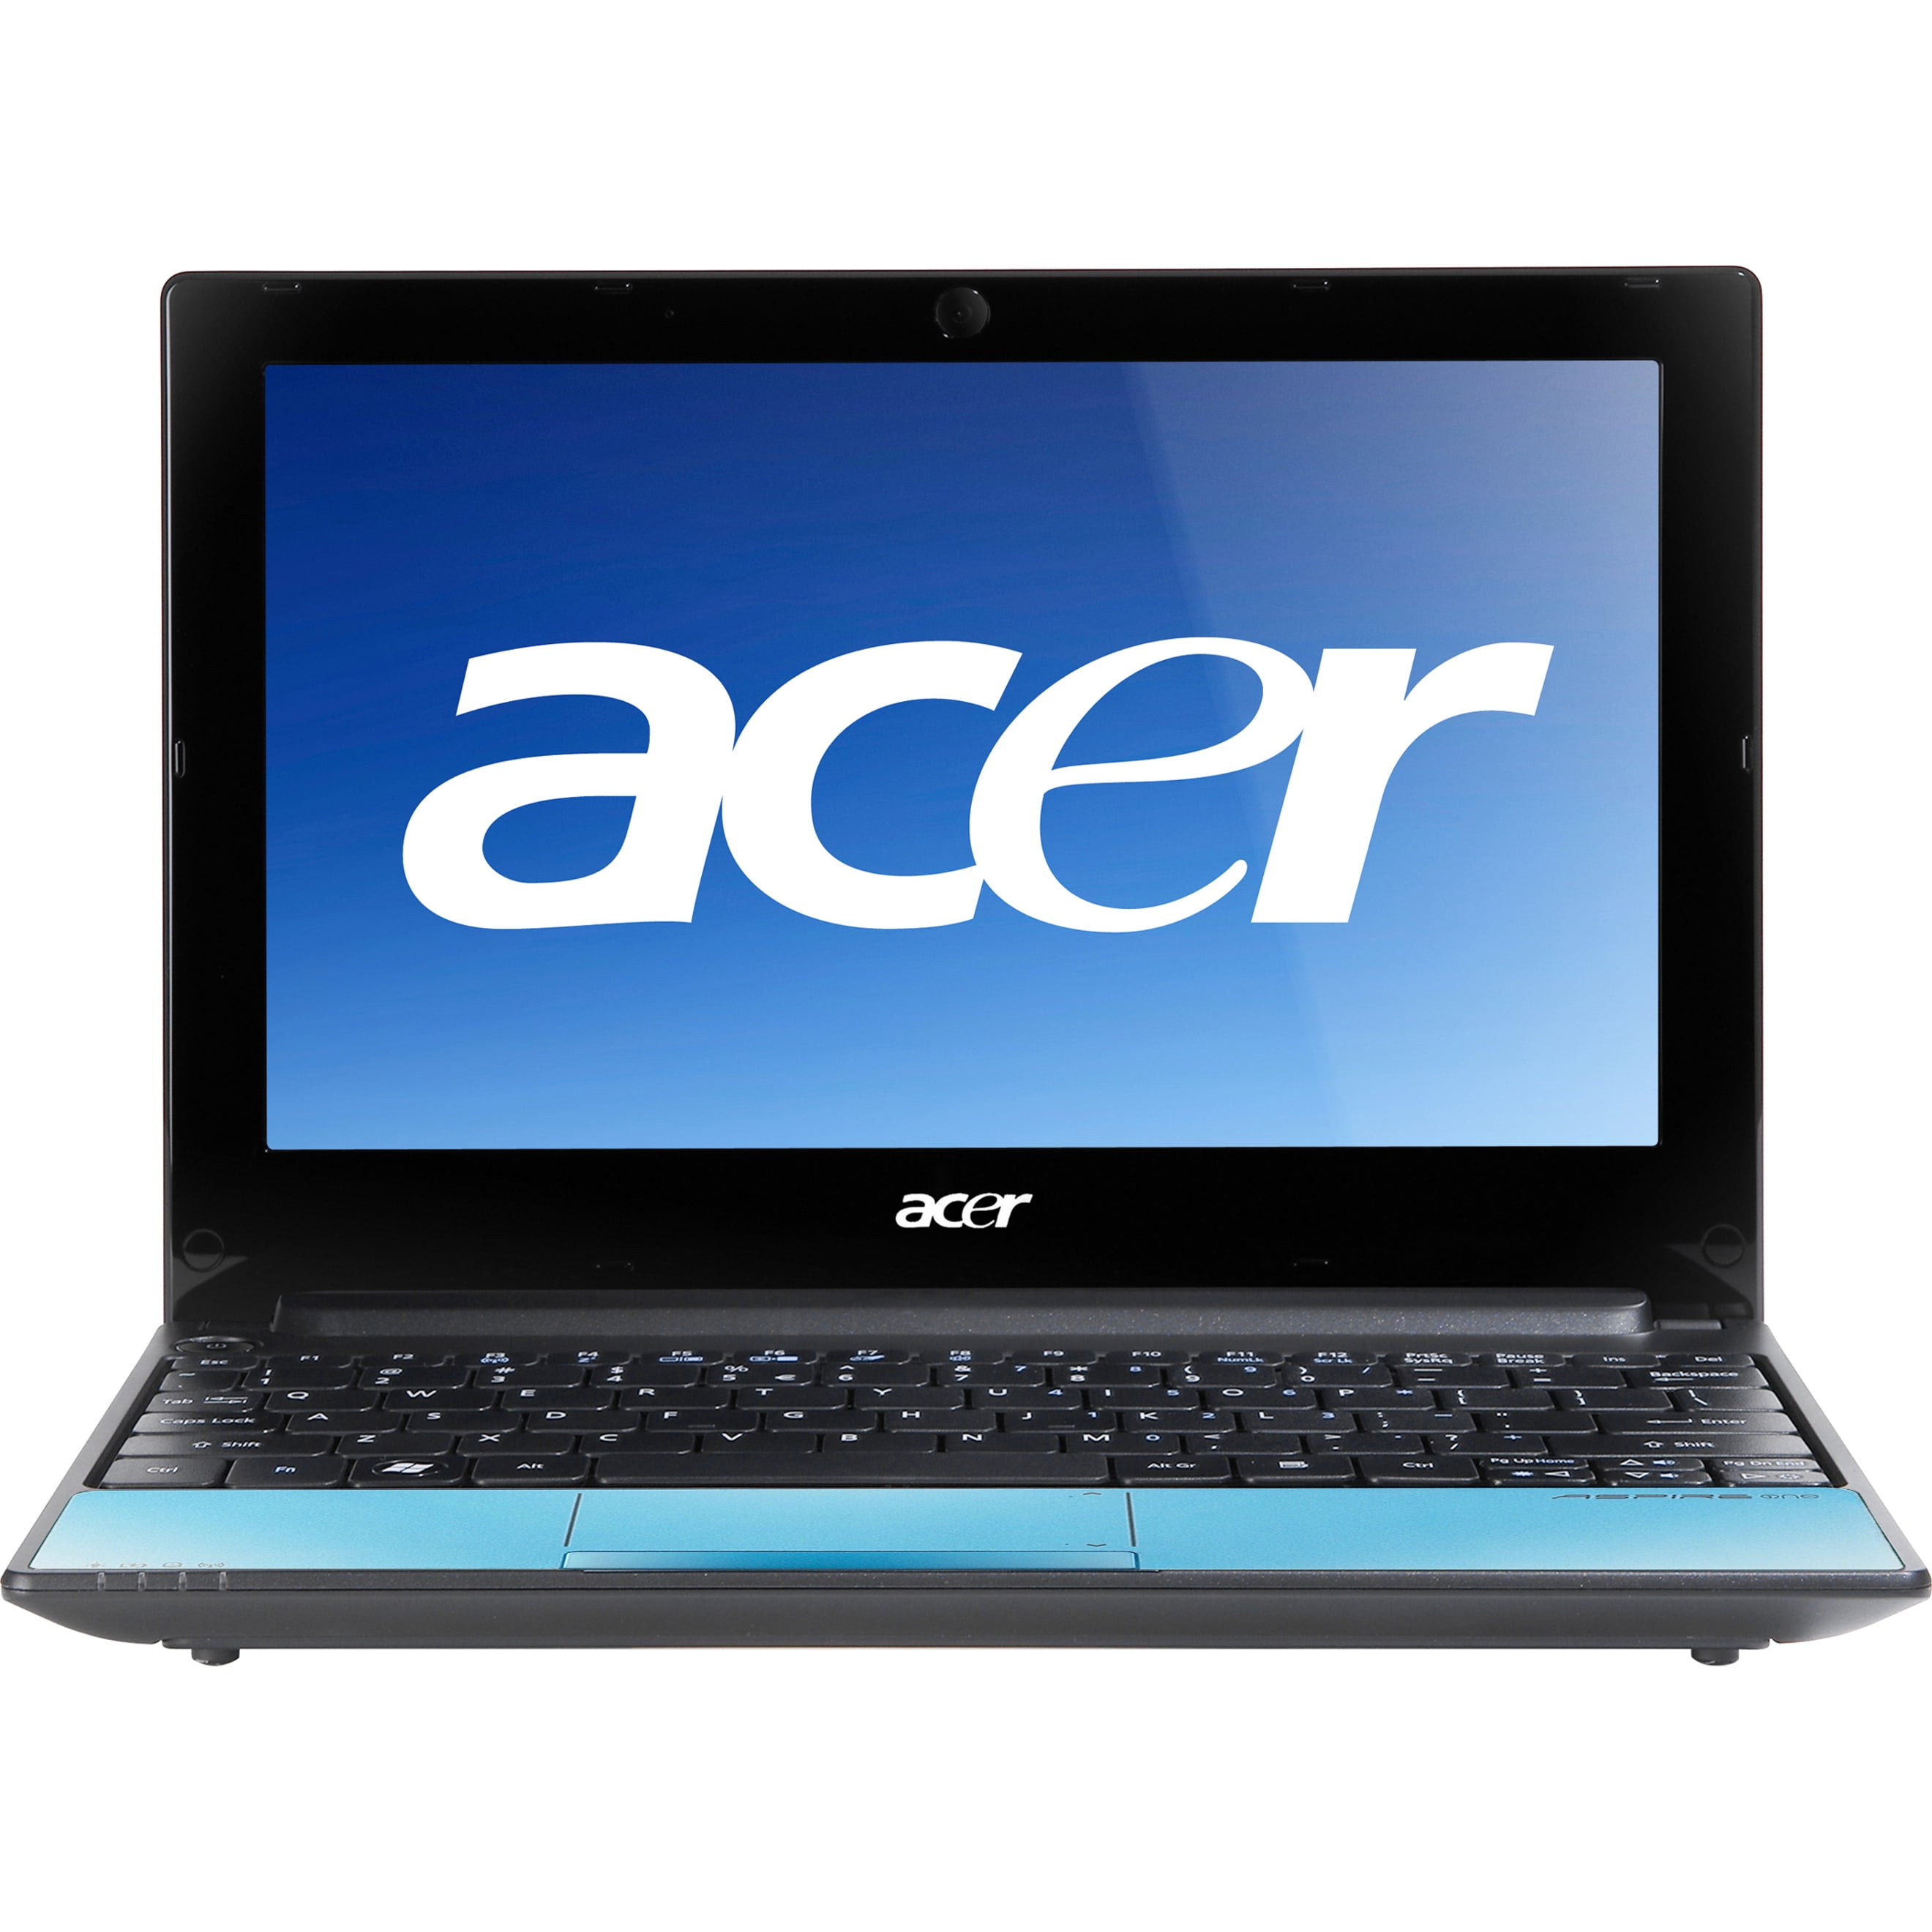 Купить ноутбук на озоне недорого. Acer Aspire one 725. Acer Aspire e1-531. Acer Aspire one 756. Acer Aspire 5749.